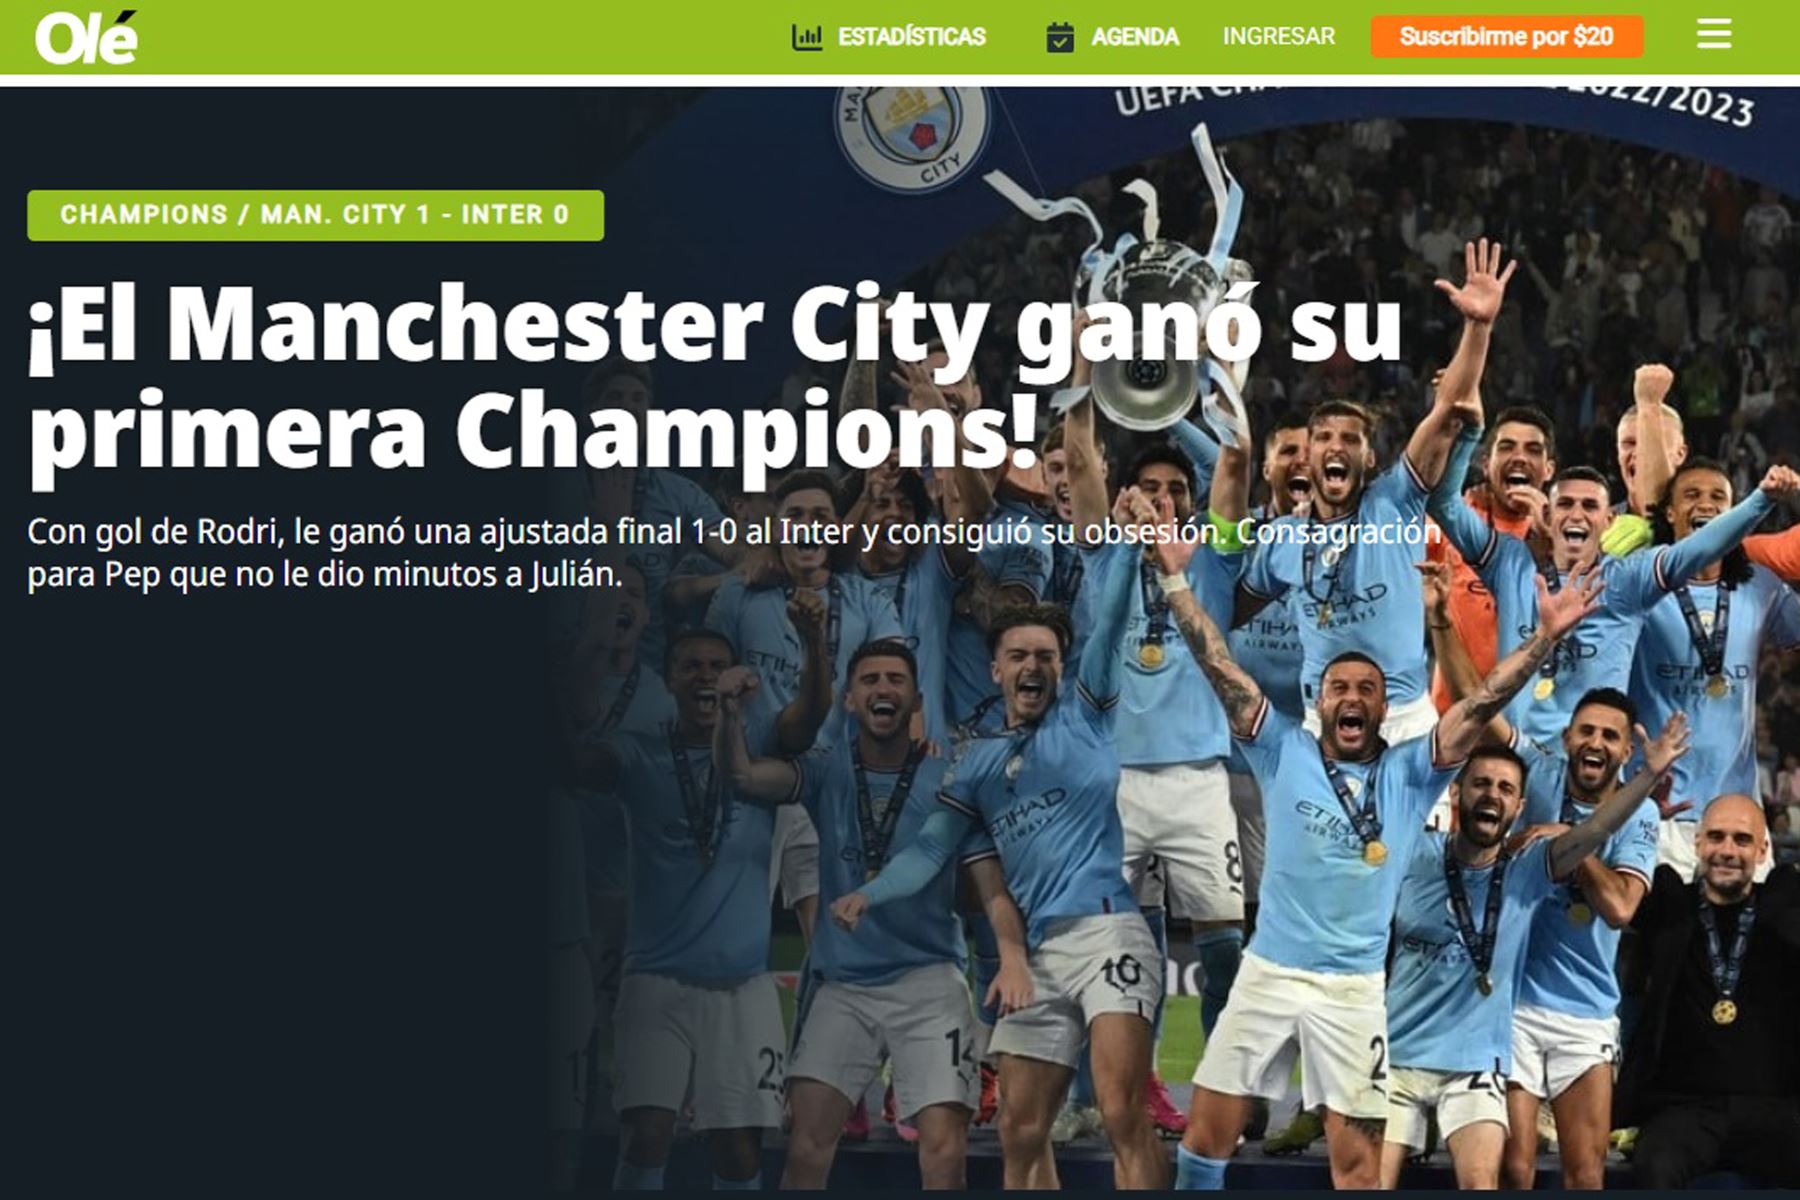 Así informan los medios internacionales el triunfo de Manchester City. En la imagen, portada del diario Olé.
Foto: Internet/Medios